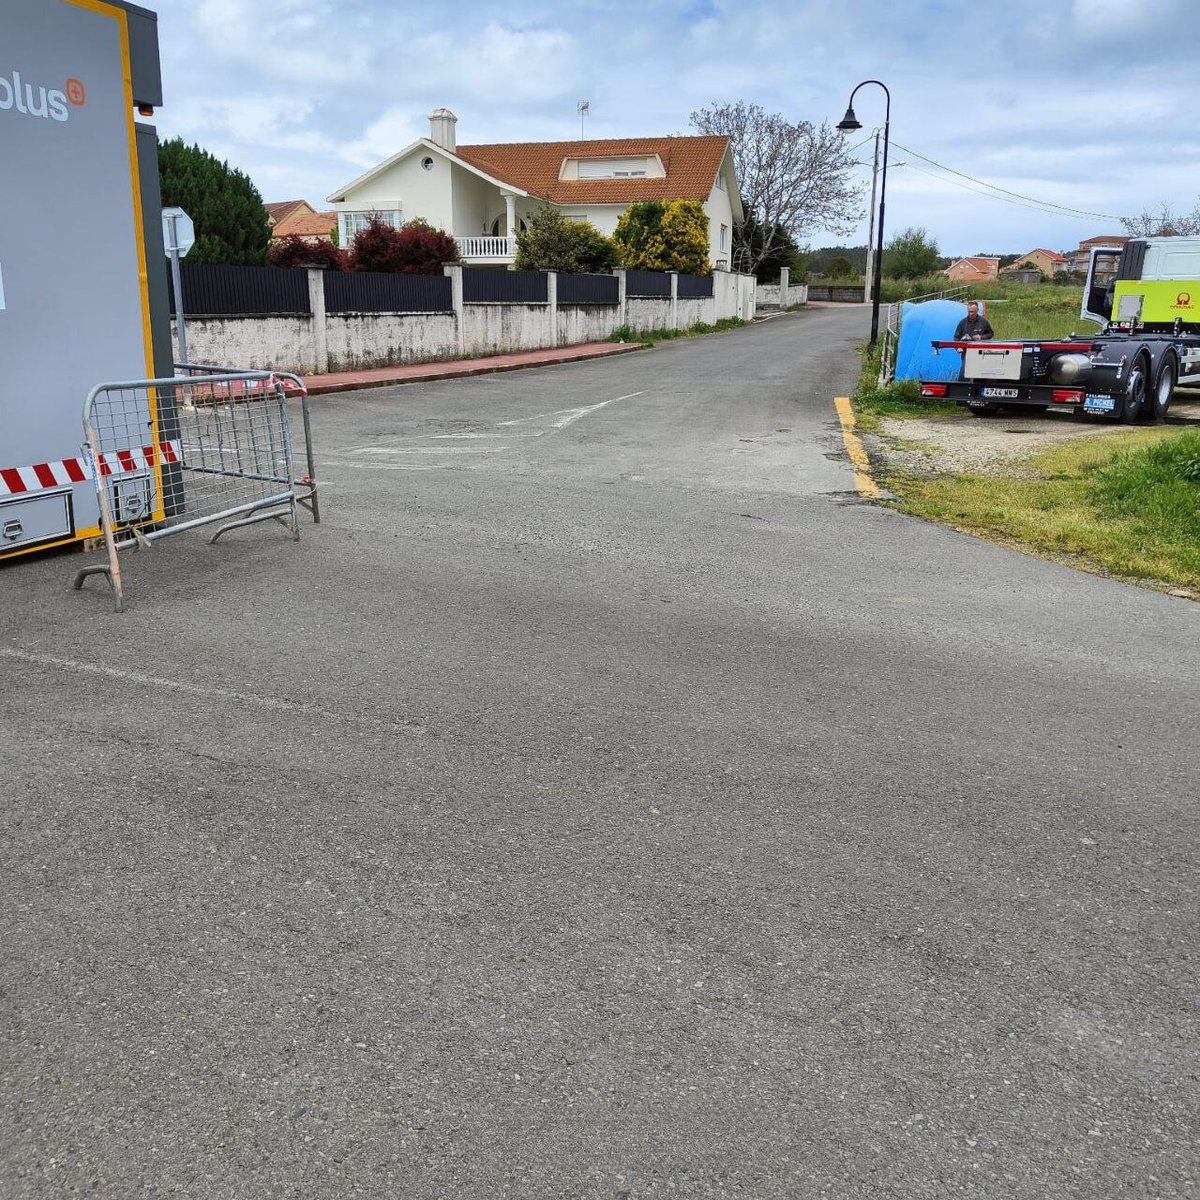 Importante ‼️ 
 
👉 Hoxe, 15 de maio, instalaron a unidade móbil de ITV de vehículos agrícolas na 📍 pista da igrexa de Xaviña.  
 
🚧 A raíz disto, a estrada está parcialmente cortada.  
 
🙏 Solicitamos á veciñanza que circule con precaución.  
 
🤝 Grazas de antemán.